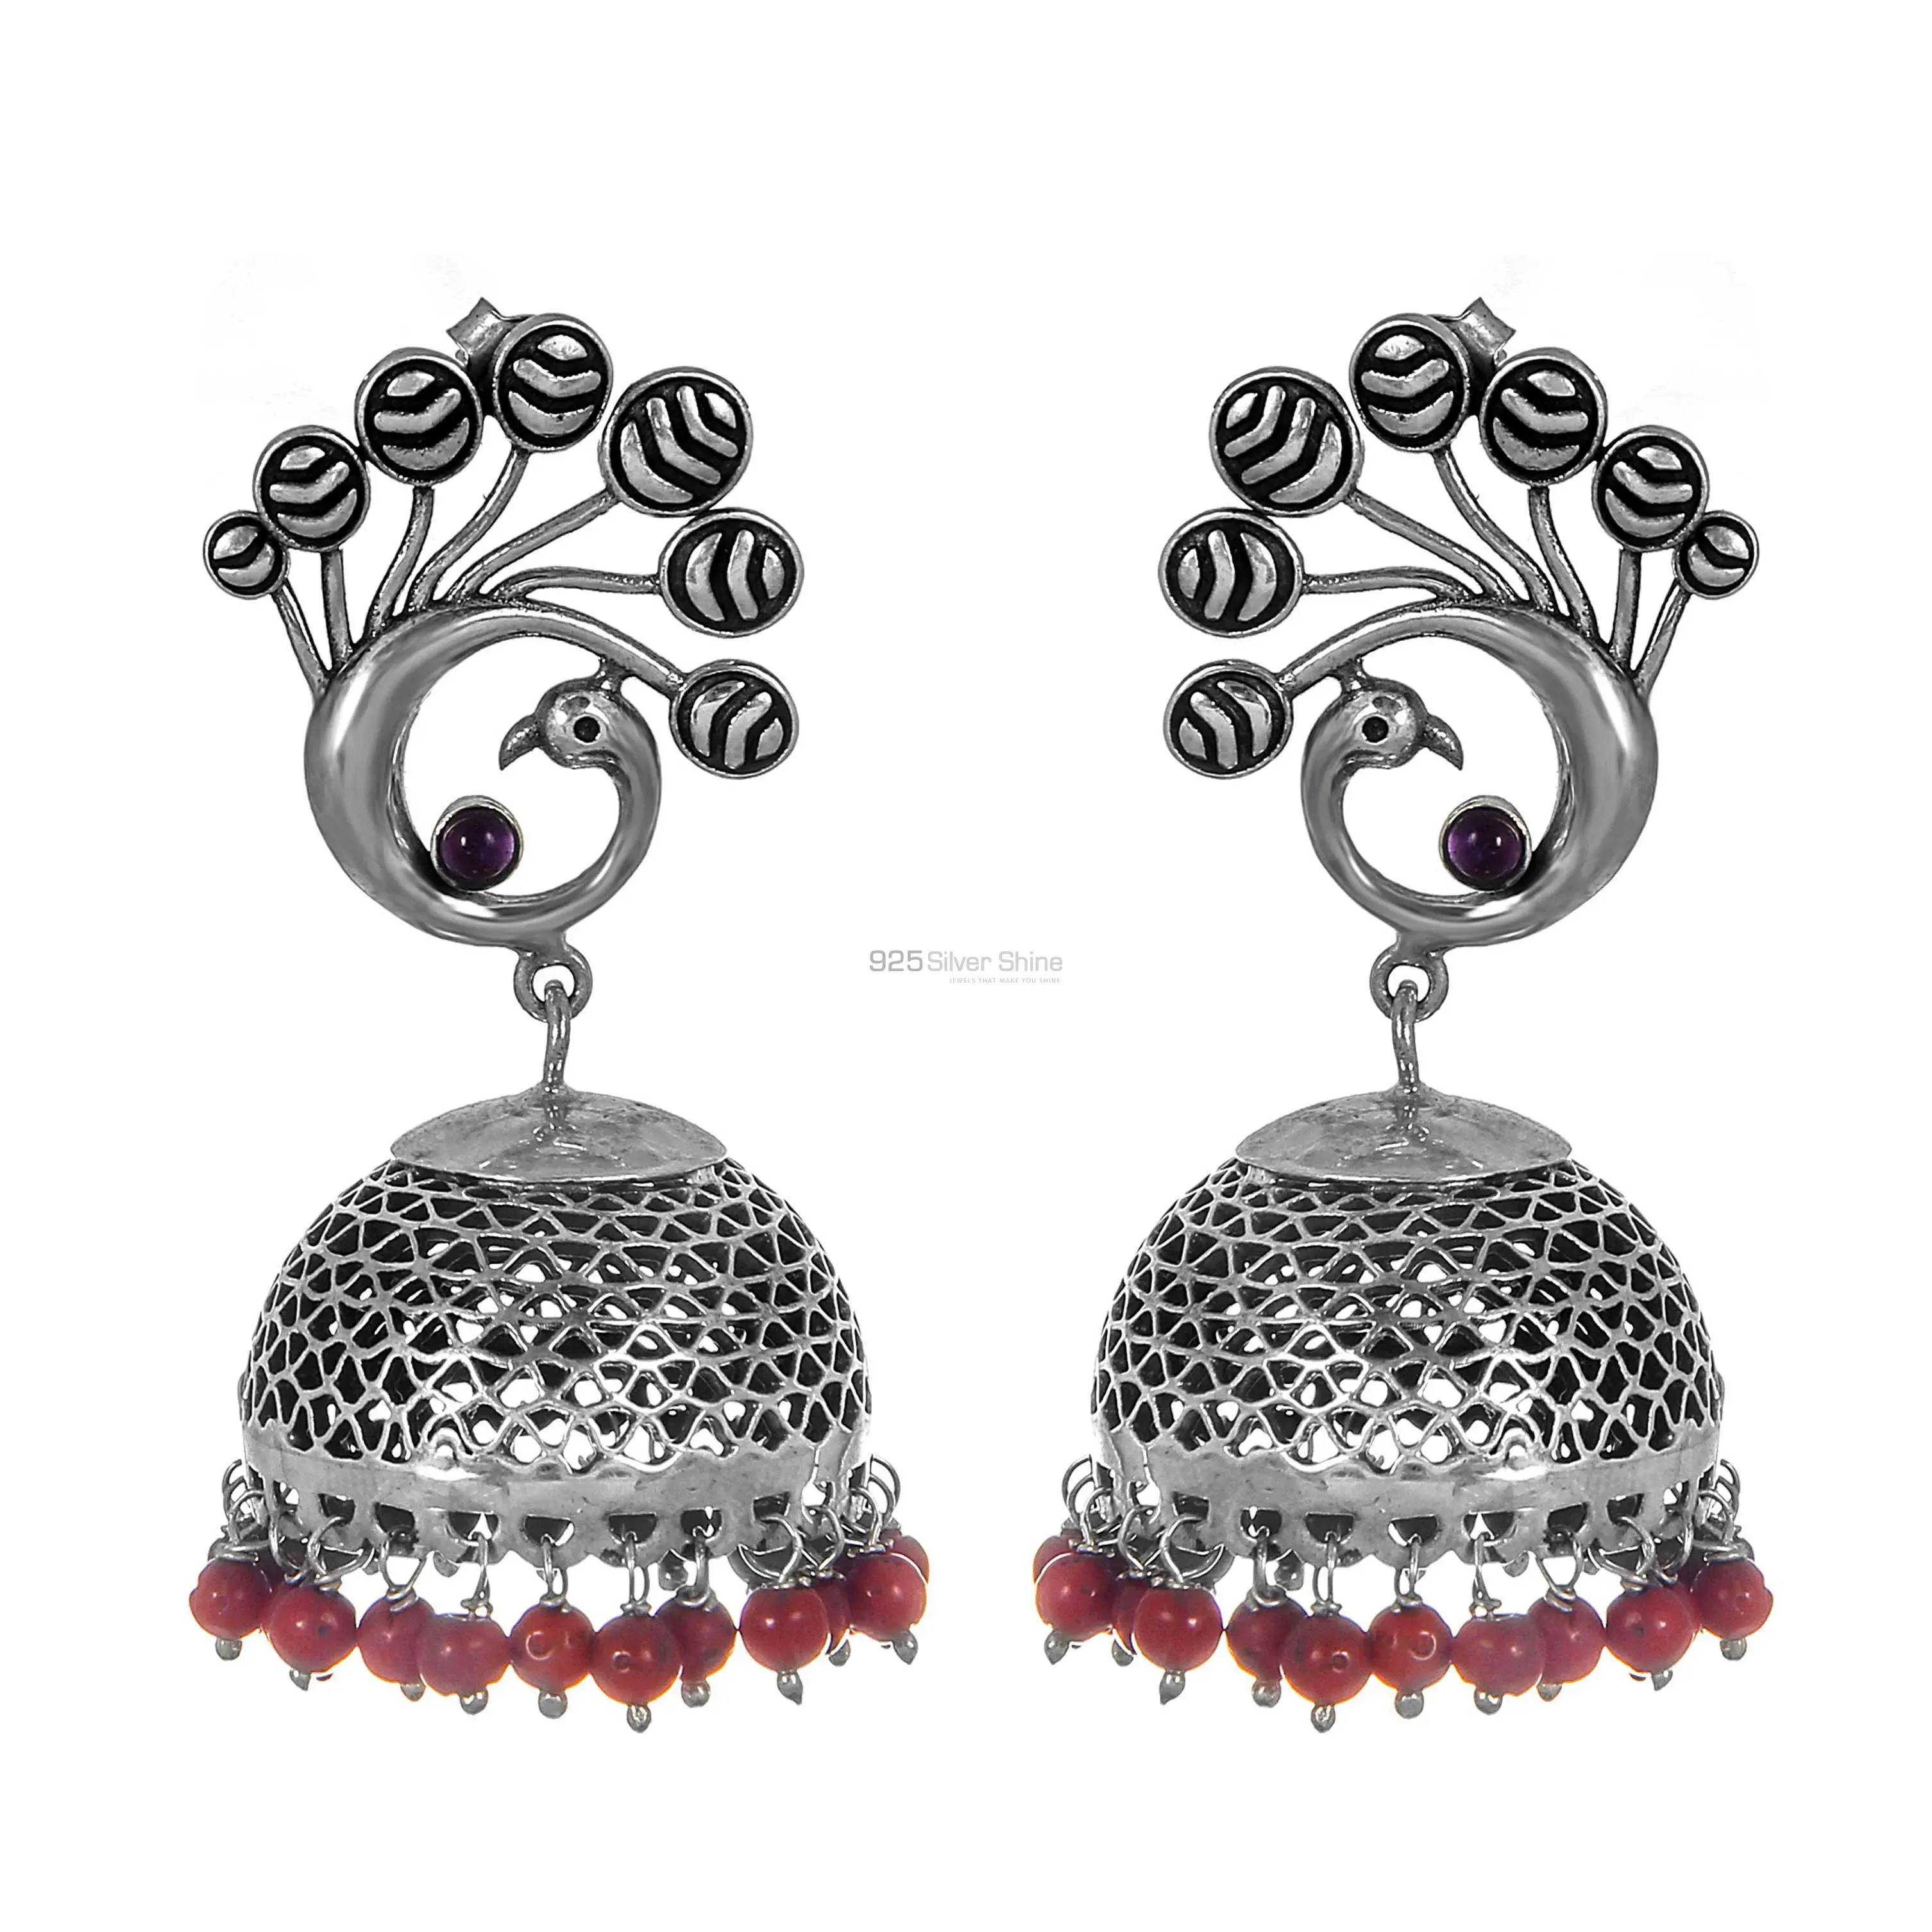 Semi Precious Gemstone Earrings Wholesaler In 925 Sterling Silver Jewelry 925SE254